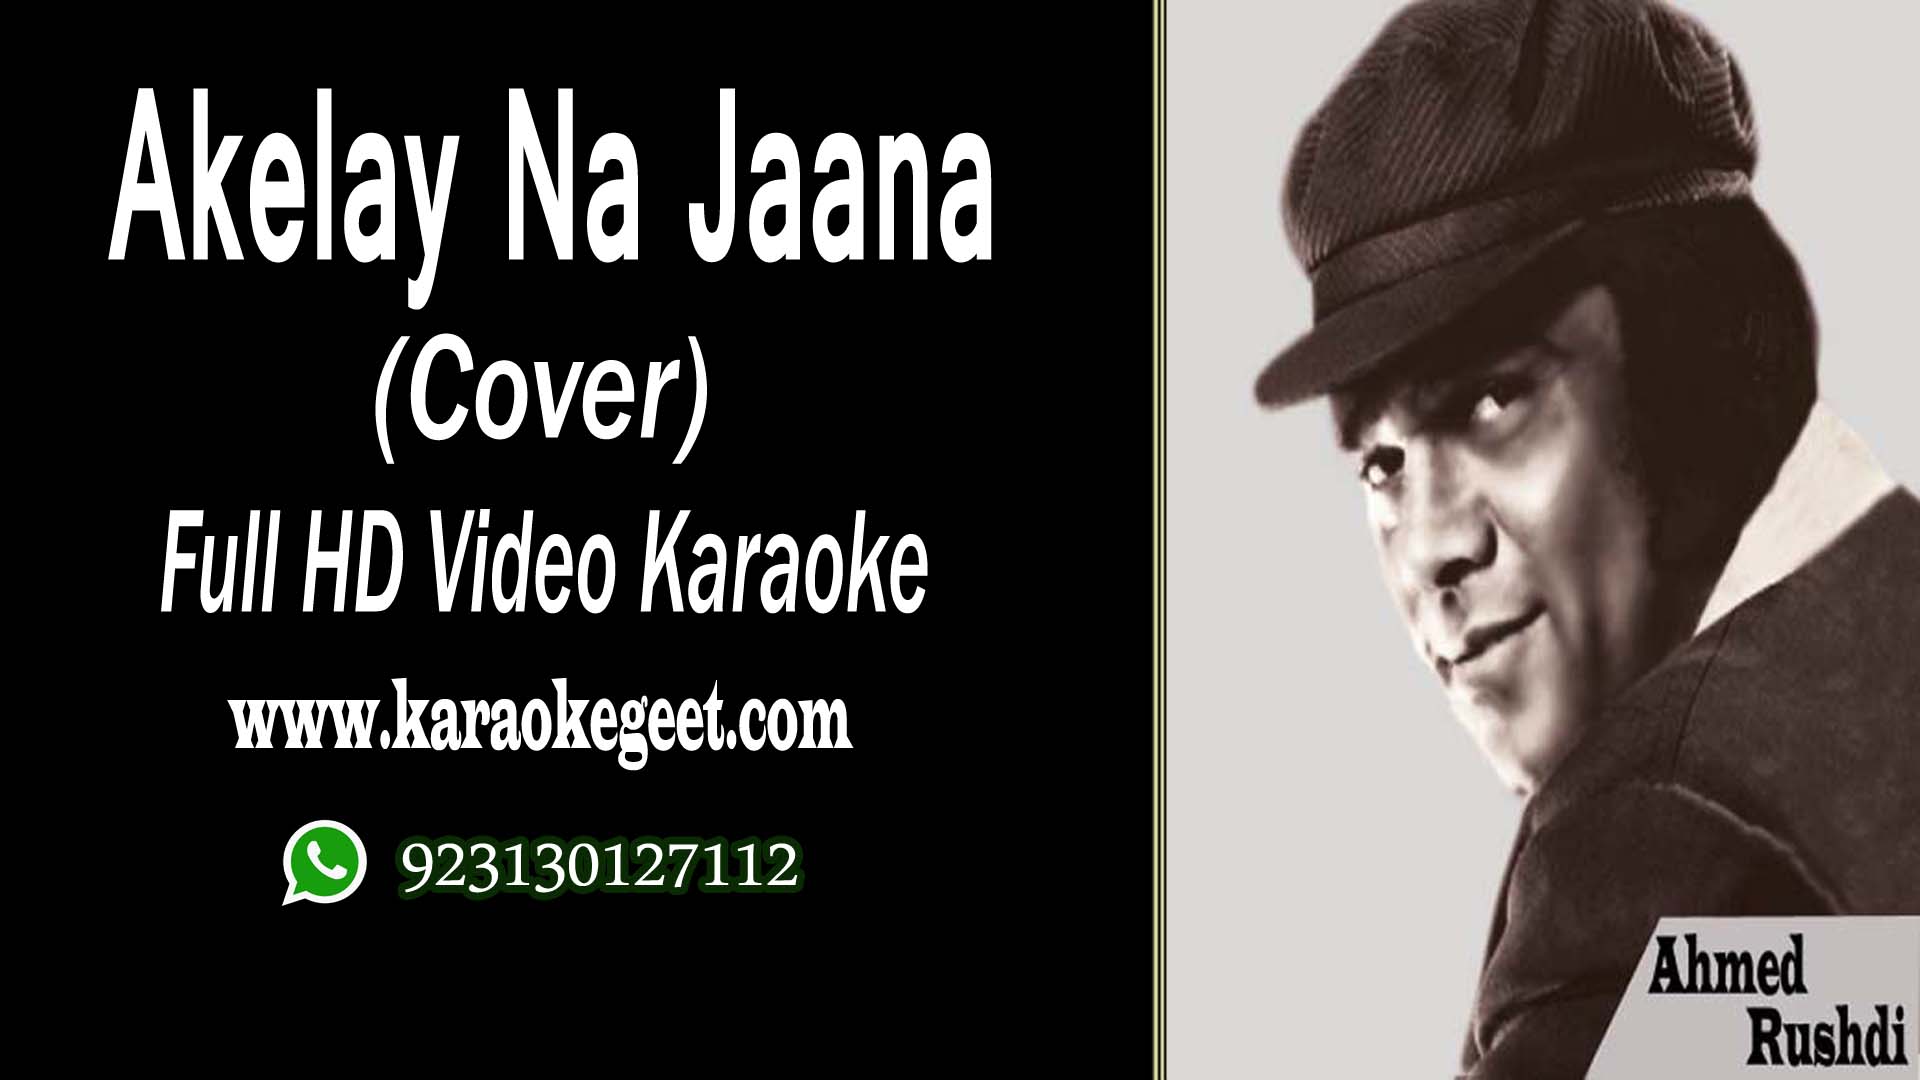 Akele na jana hamain chhor kar yun Cover Video Karaoke